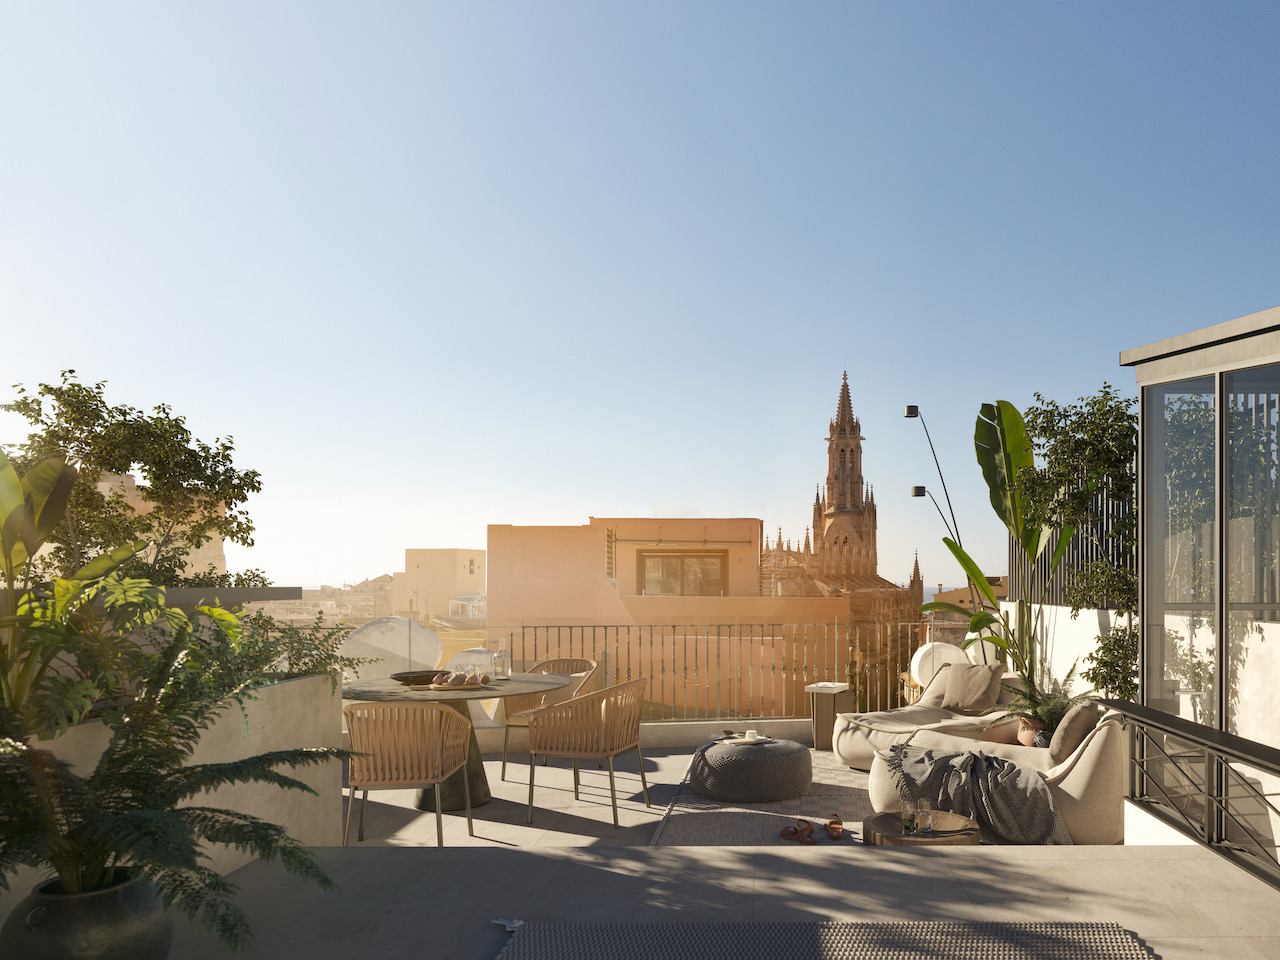 Exklusives Penthouse mit Terrasse und Swimmingpool in der Altstadt von Palma.